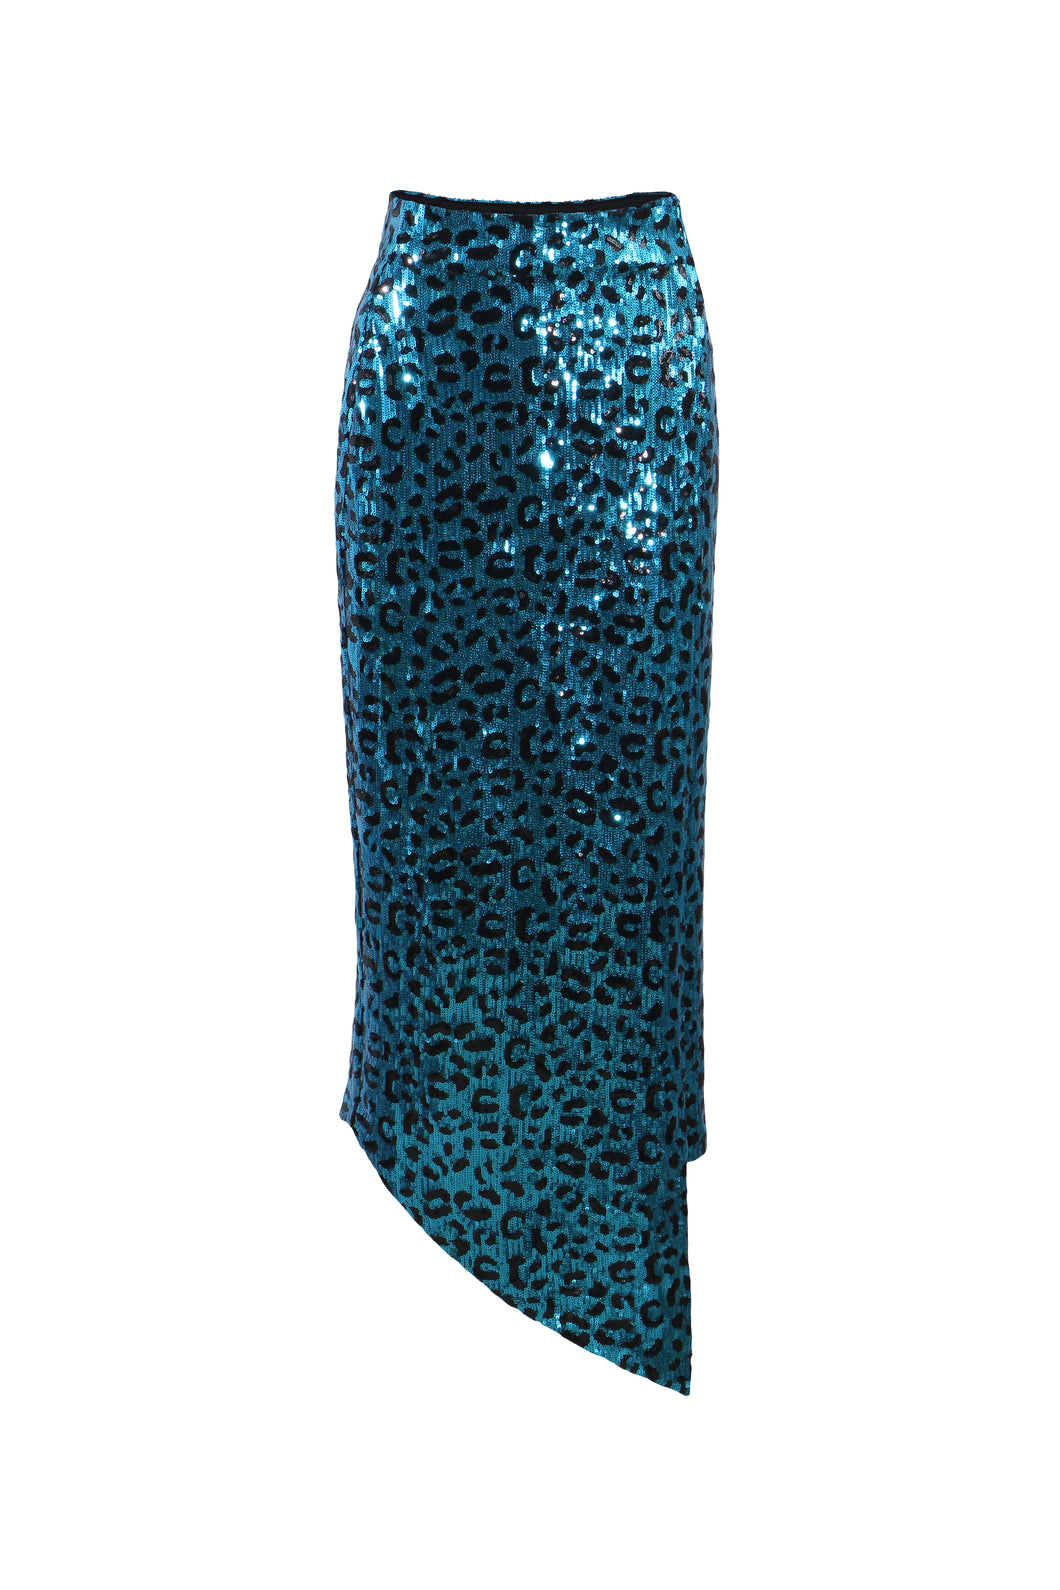 Cavi Skirt - Blue Leopard